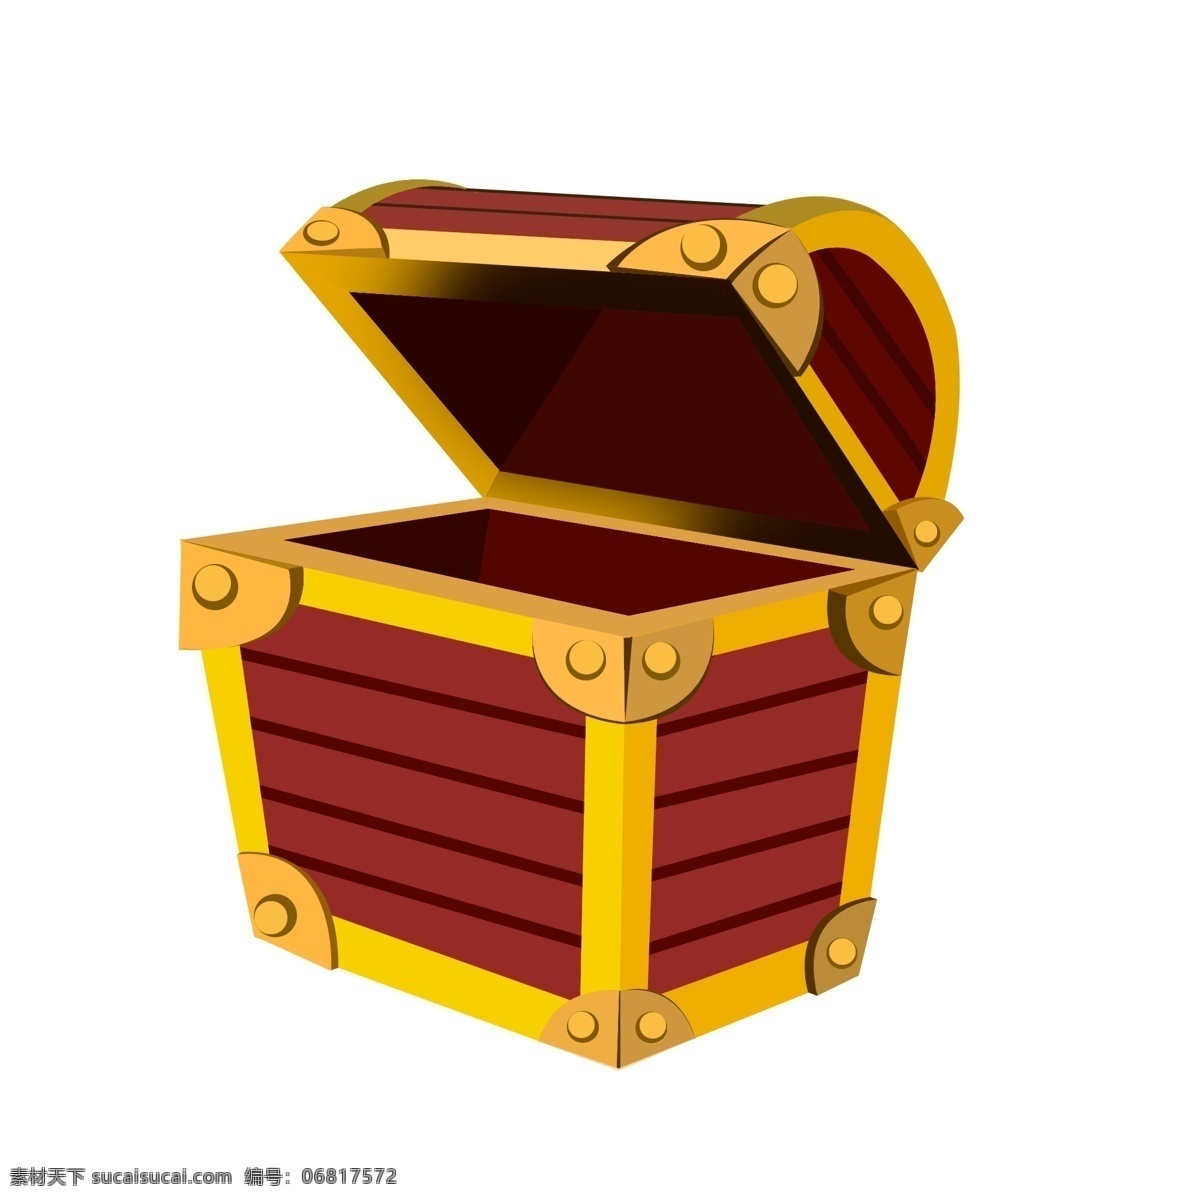 红色 宝 箱 装饰 插画 红色的宝箱 金融宝箱 漂亮的宝箱 创意宝箱 宝箱装饰 宝箱插画 立体宝箱